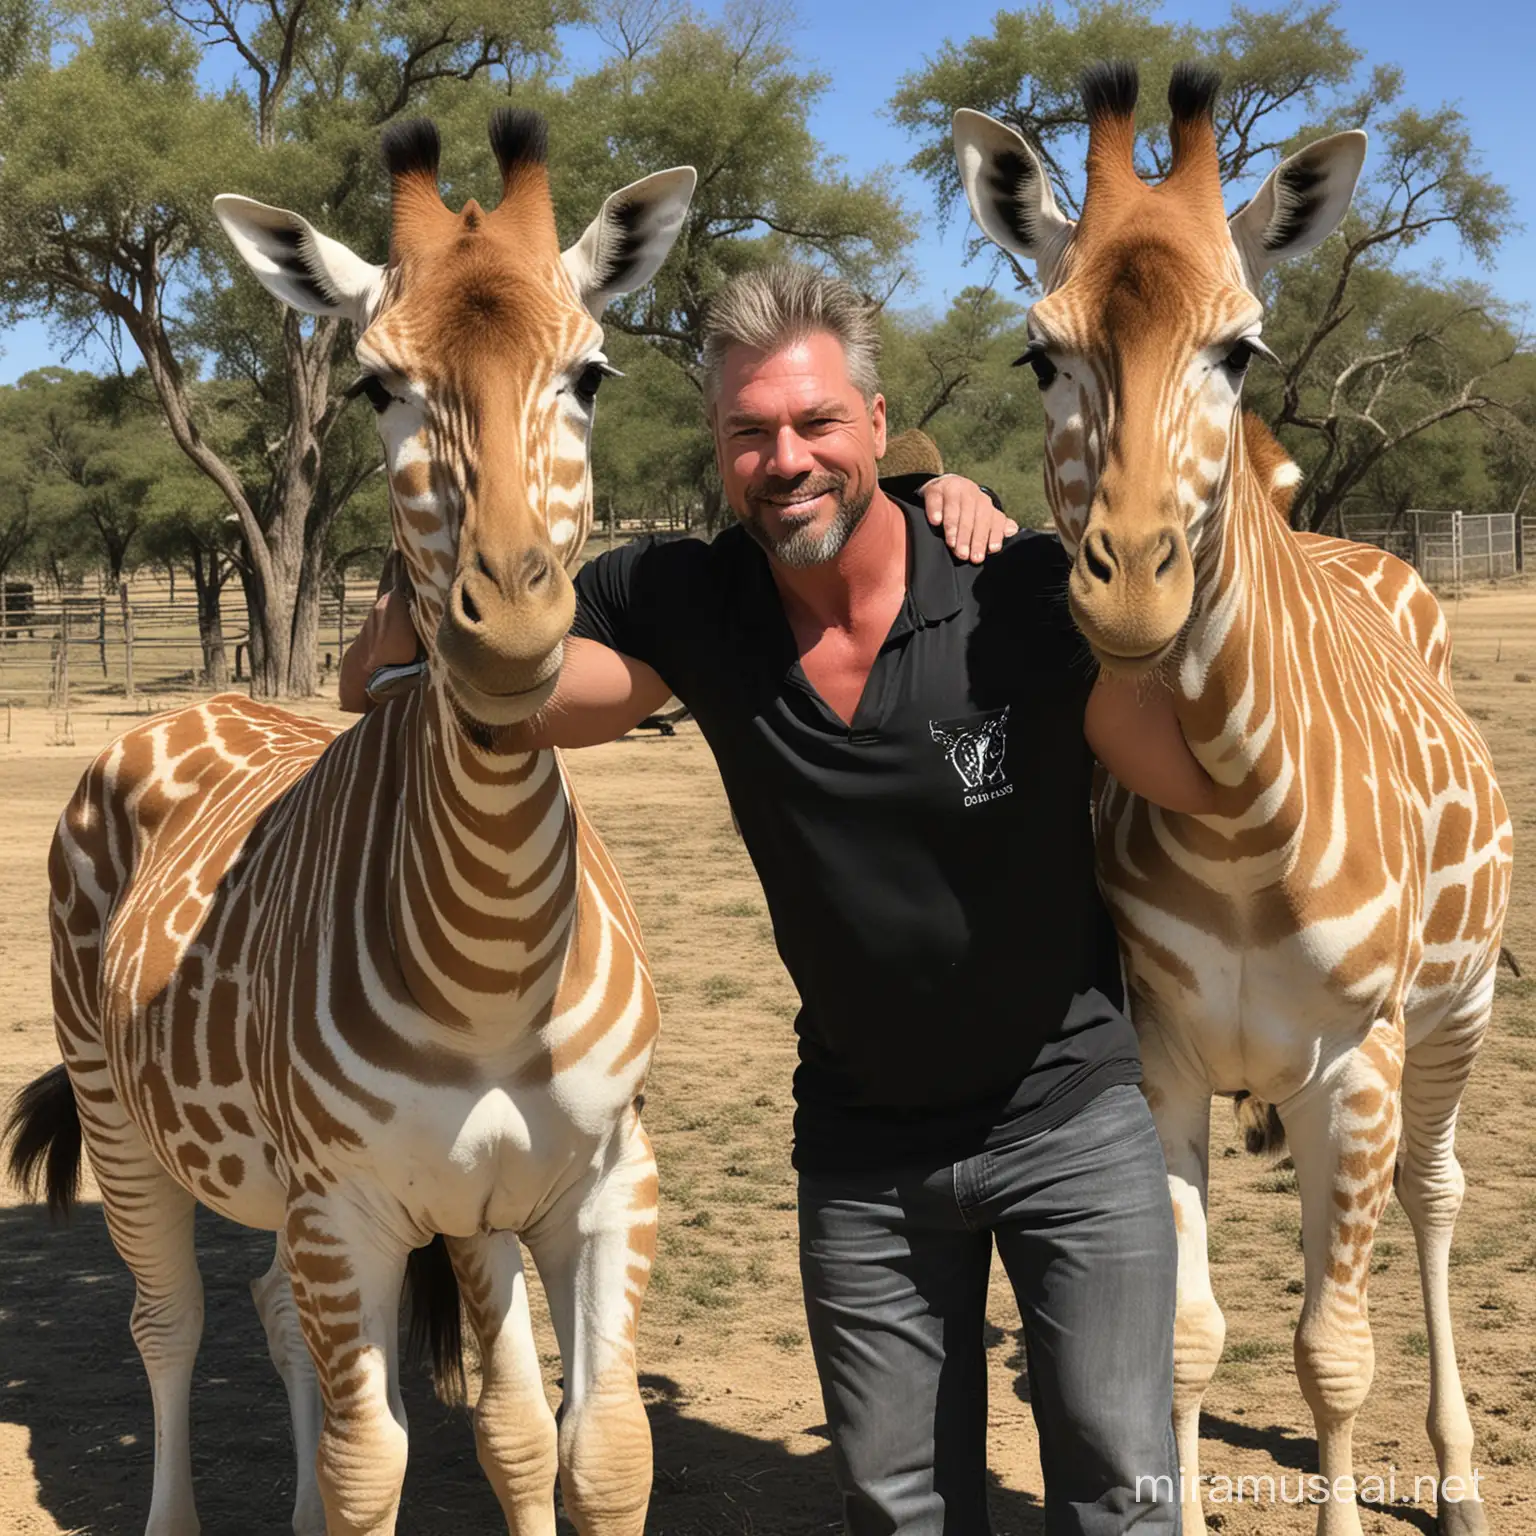 Kevin Scott Nash Enjoys Wildlife Zebra and Giraffe Encounter